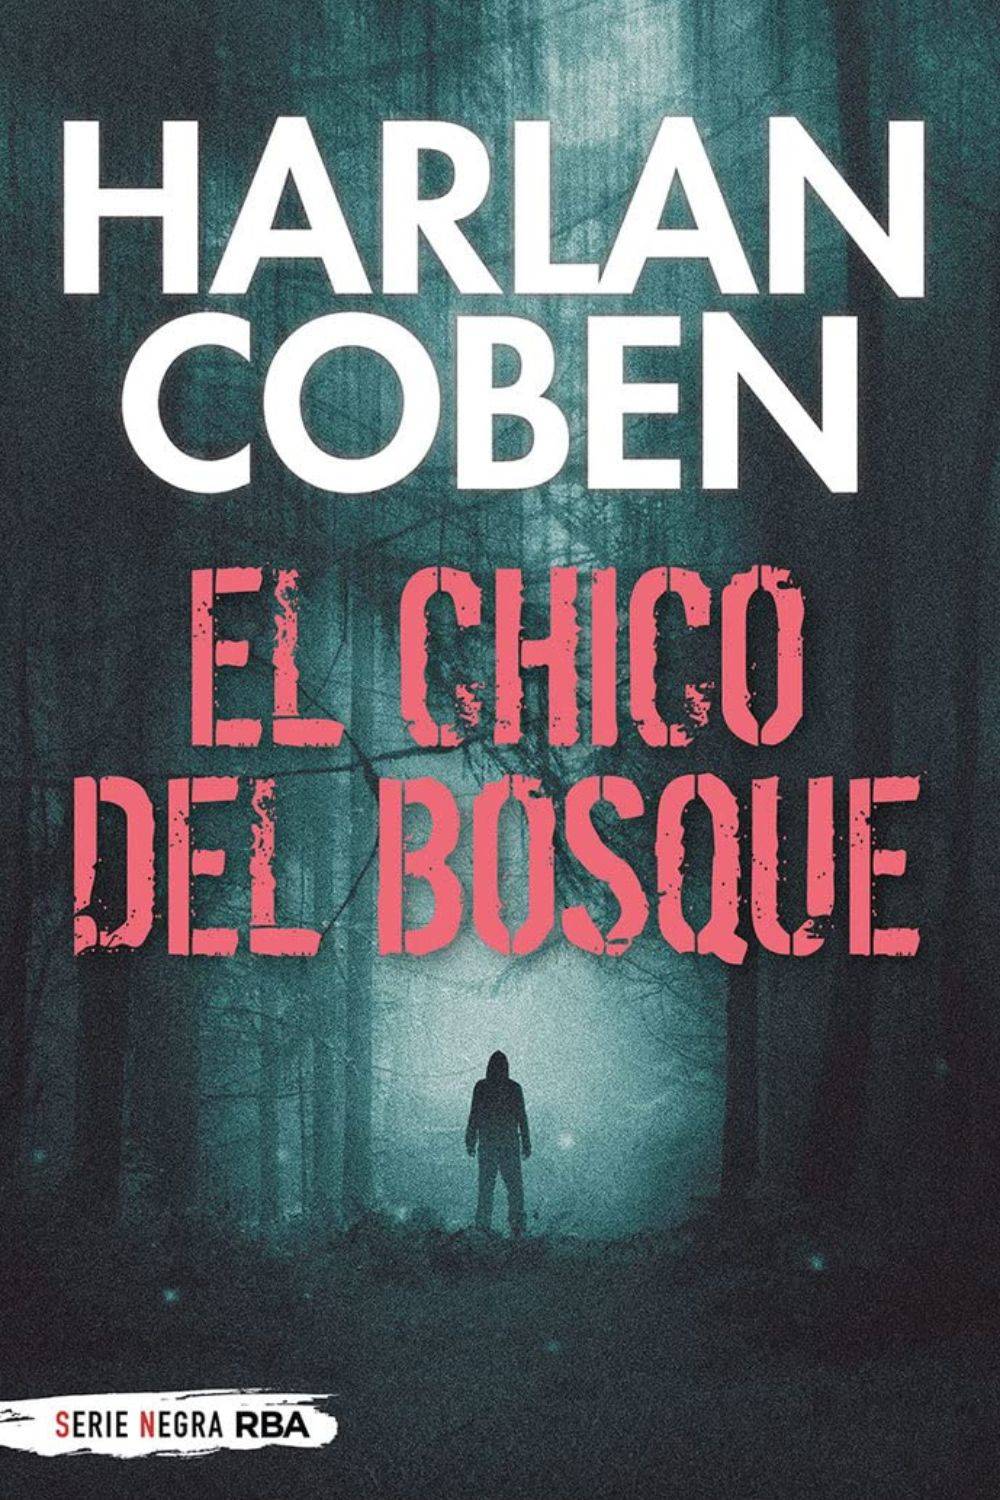 'El chico del bosque' de Harlan Coben